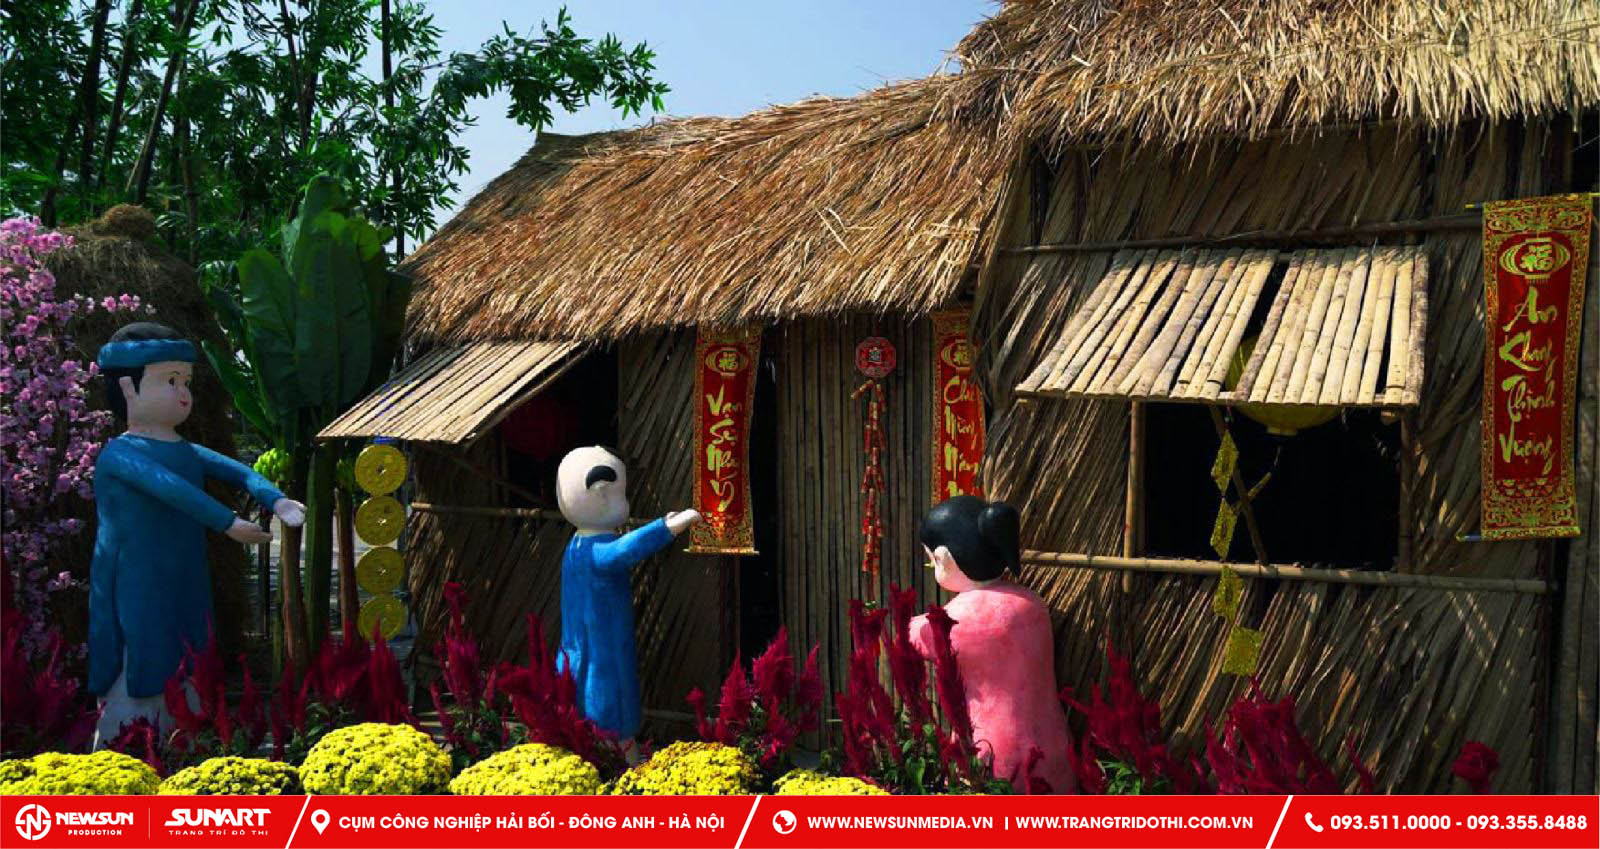 Trang trí tết phong cách xưa giữ được giá trị văn hóa, truyền thống Việt Nam